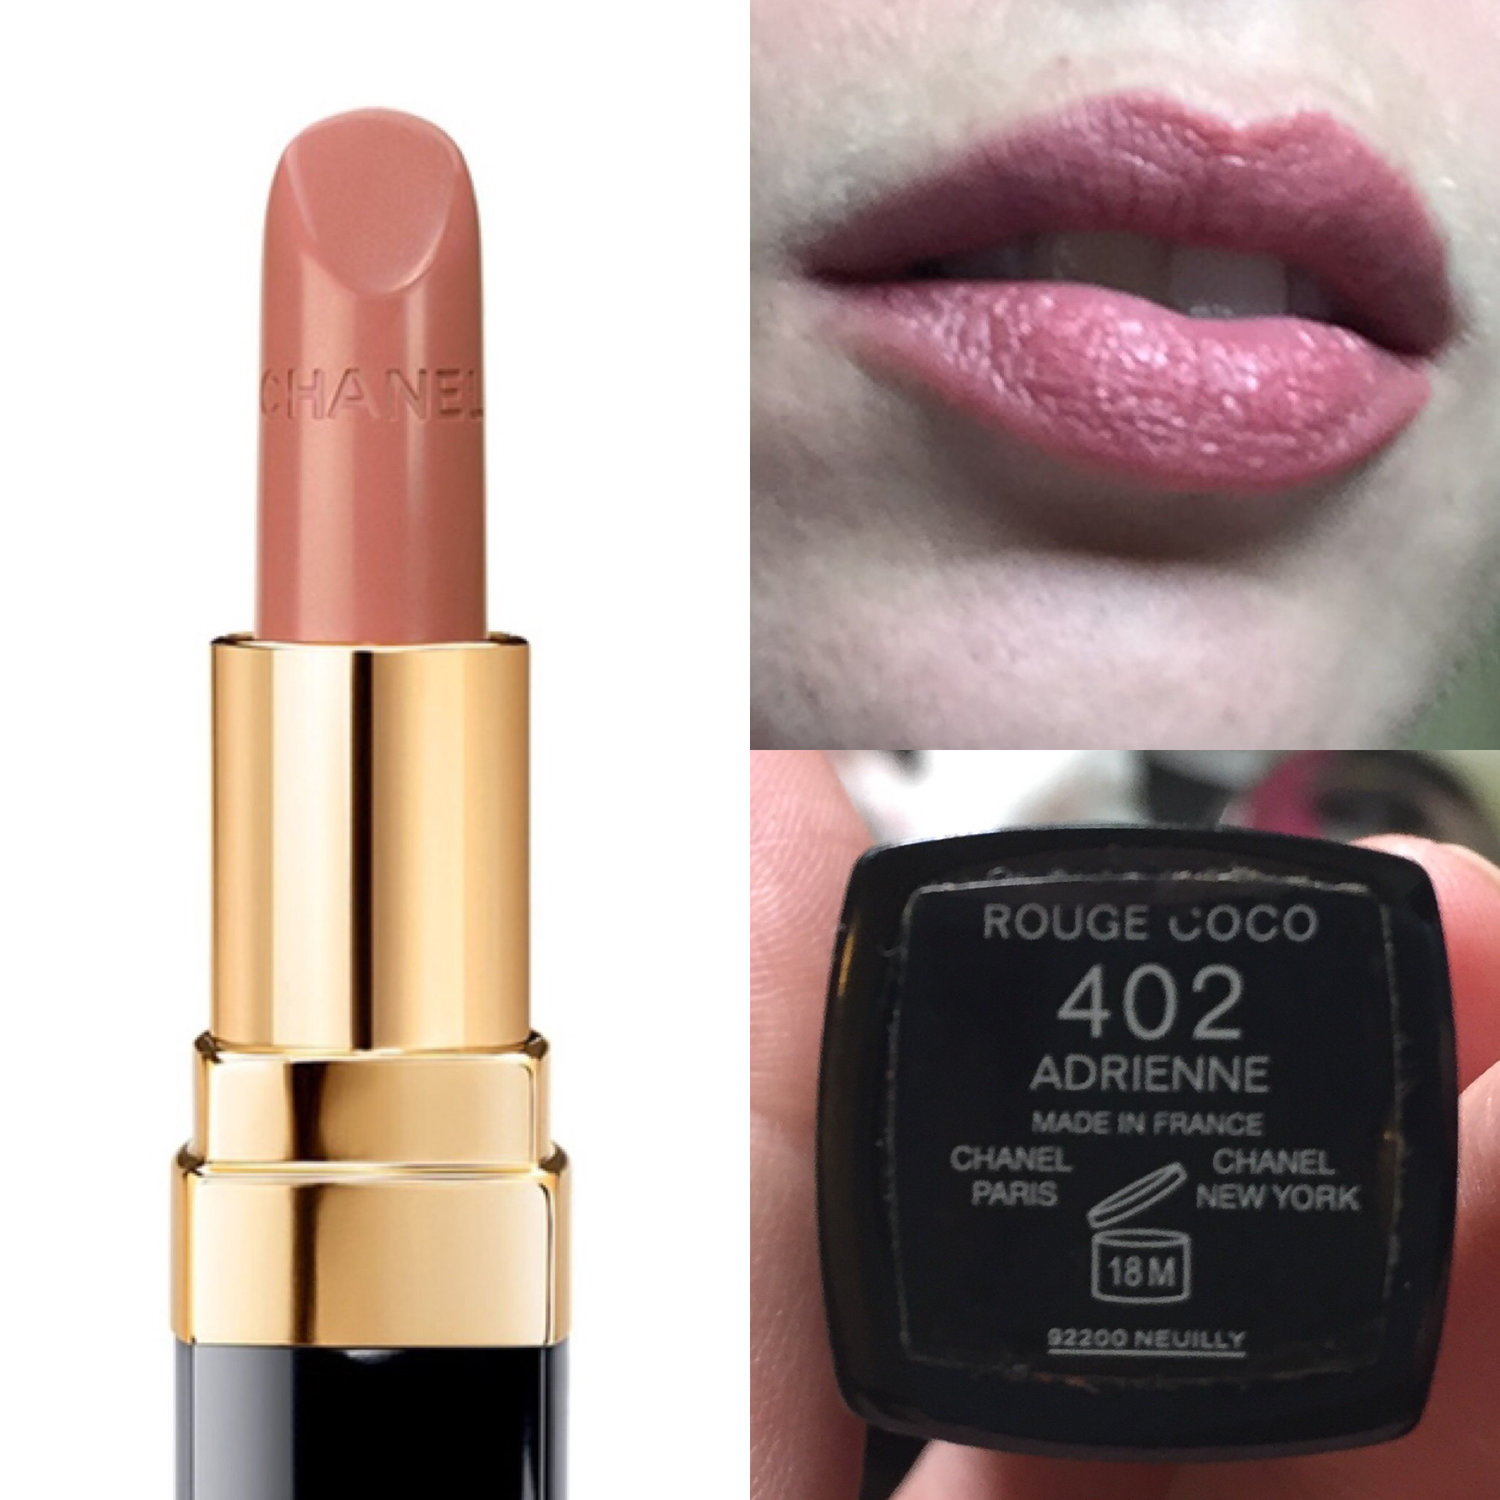 chanel adrienne lipstick swatch